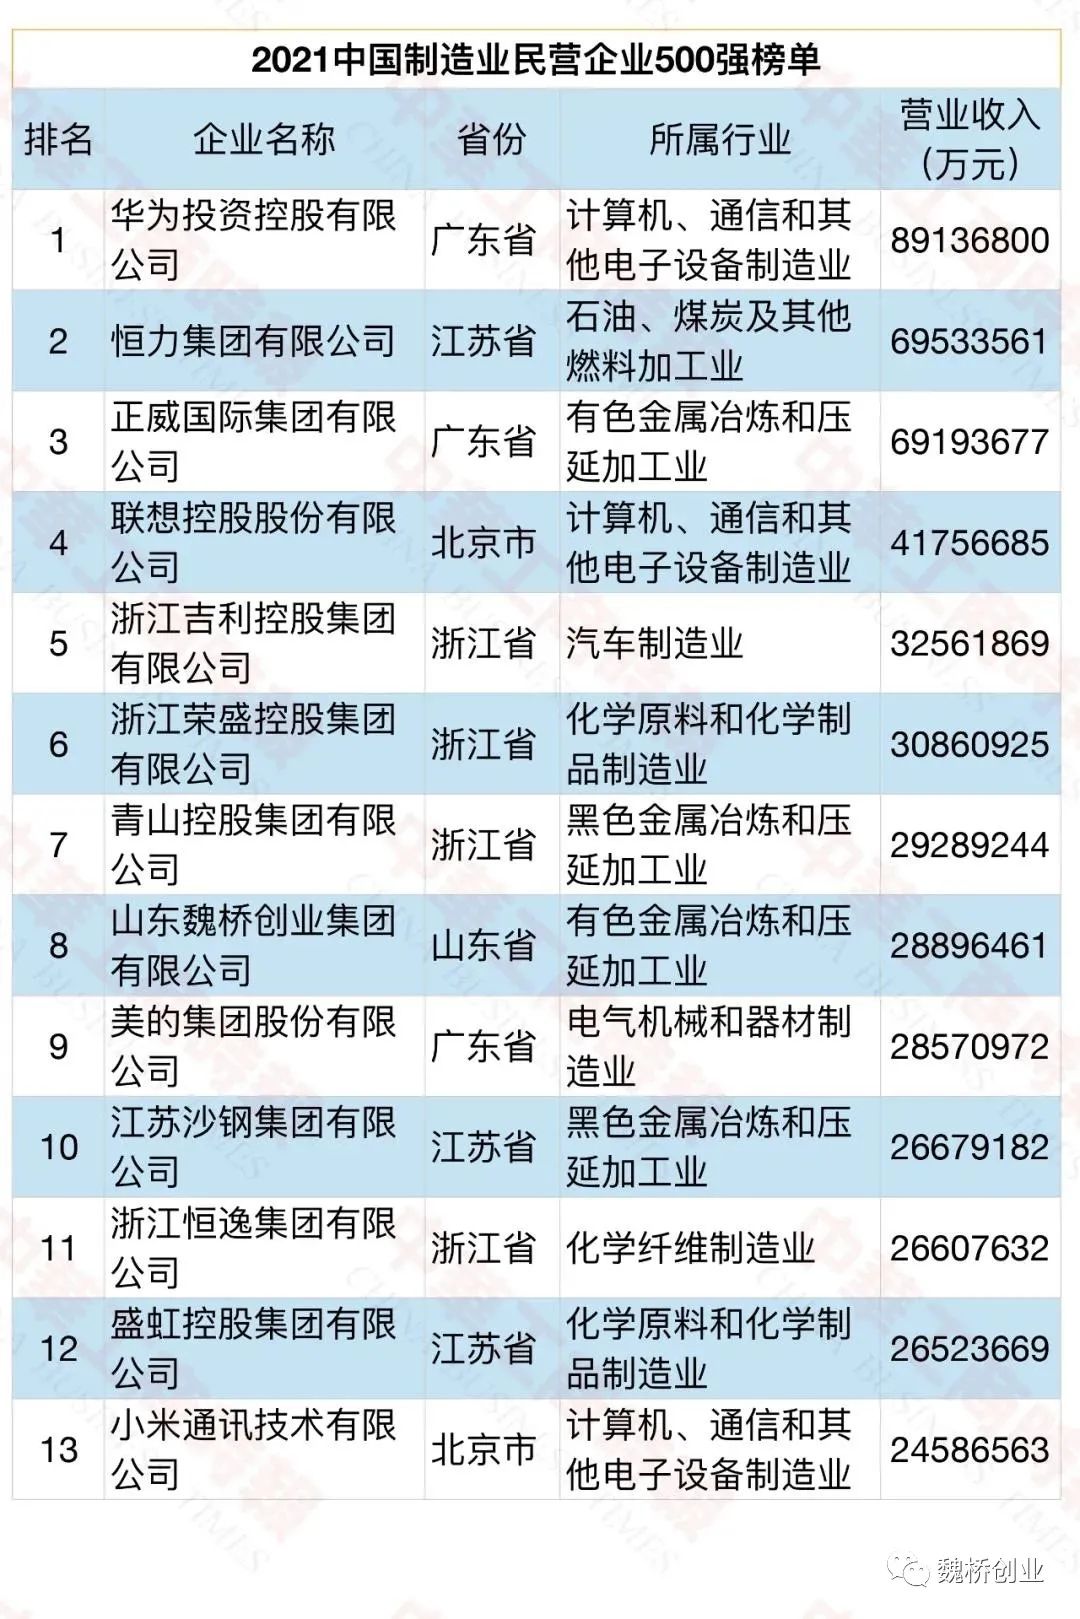 2021中国企业500强榜单发布 魏桥创业集团列第81位